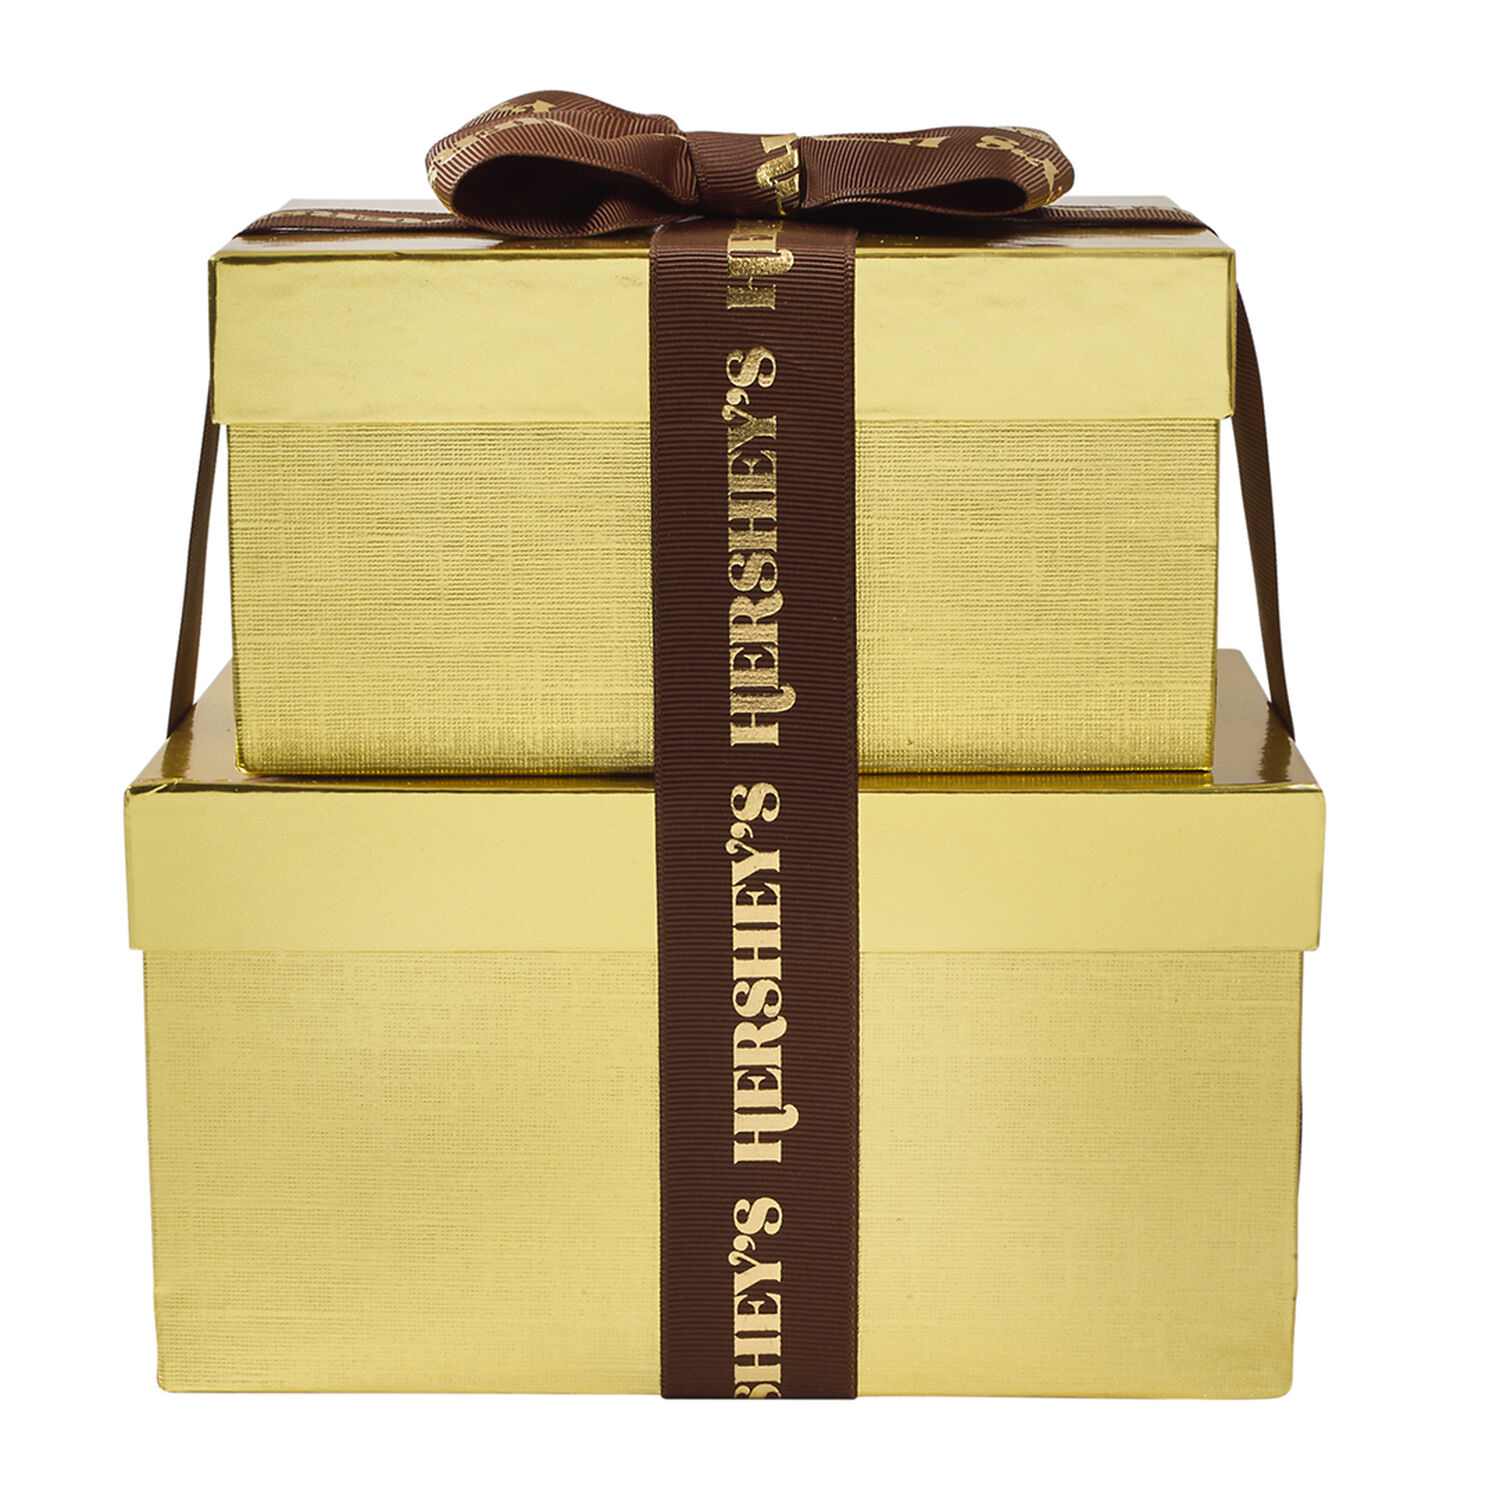 Hershey's 52oz Golden 2-Box Chocolate Gift Tower